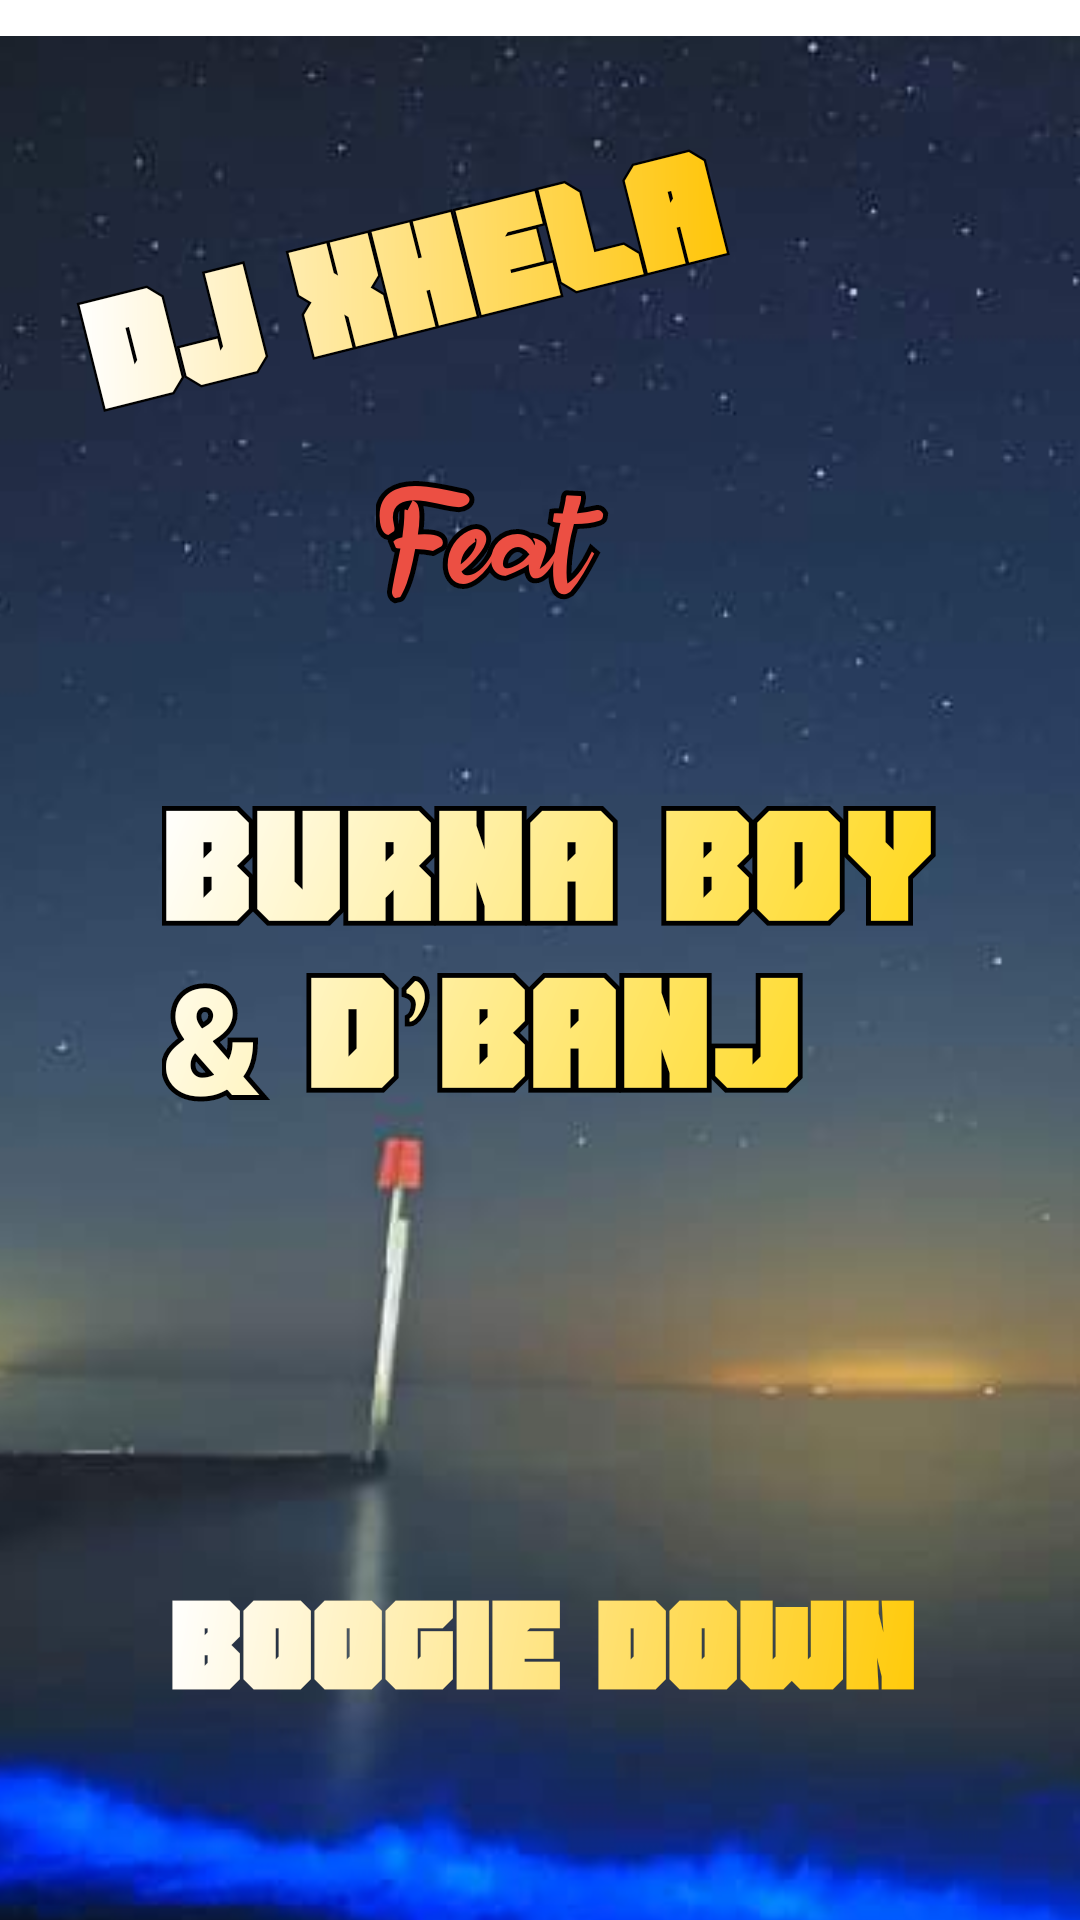 Download DJ Xhela – Boogie Down Ft. Burna Boy & D’Banj Mp3 Download